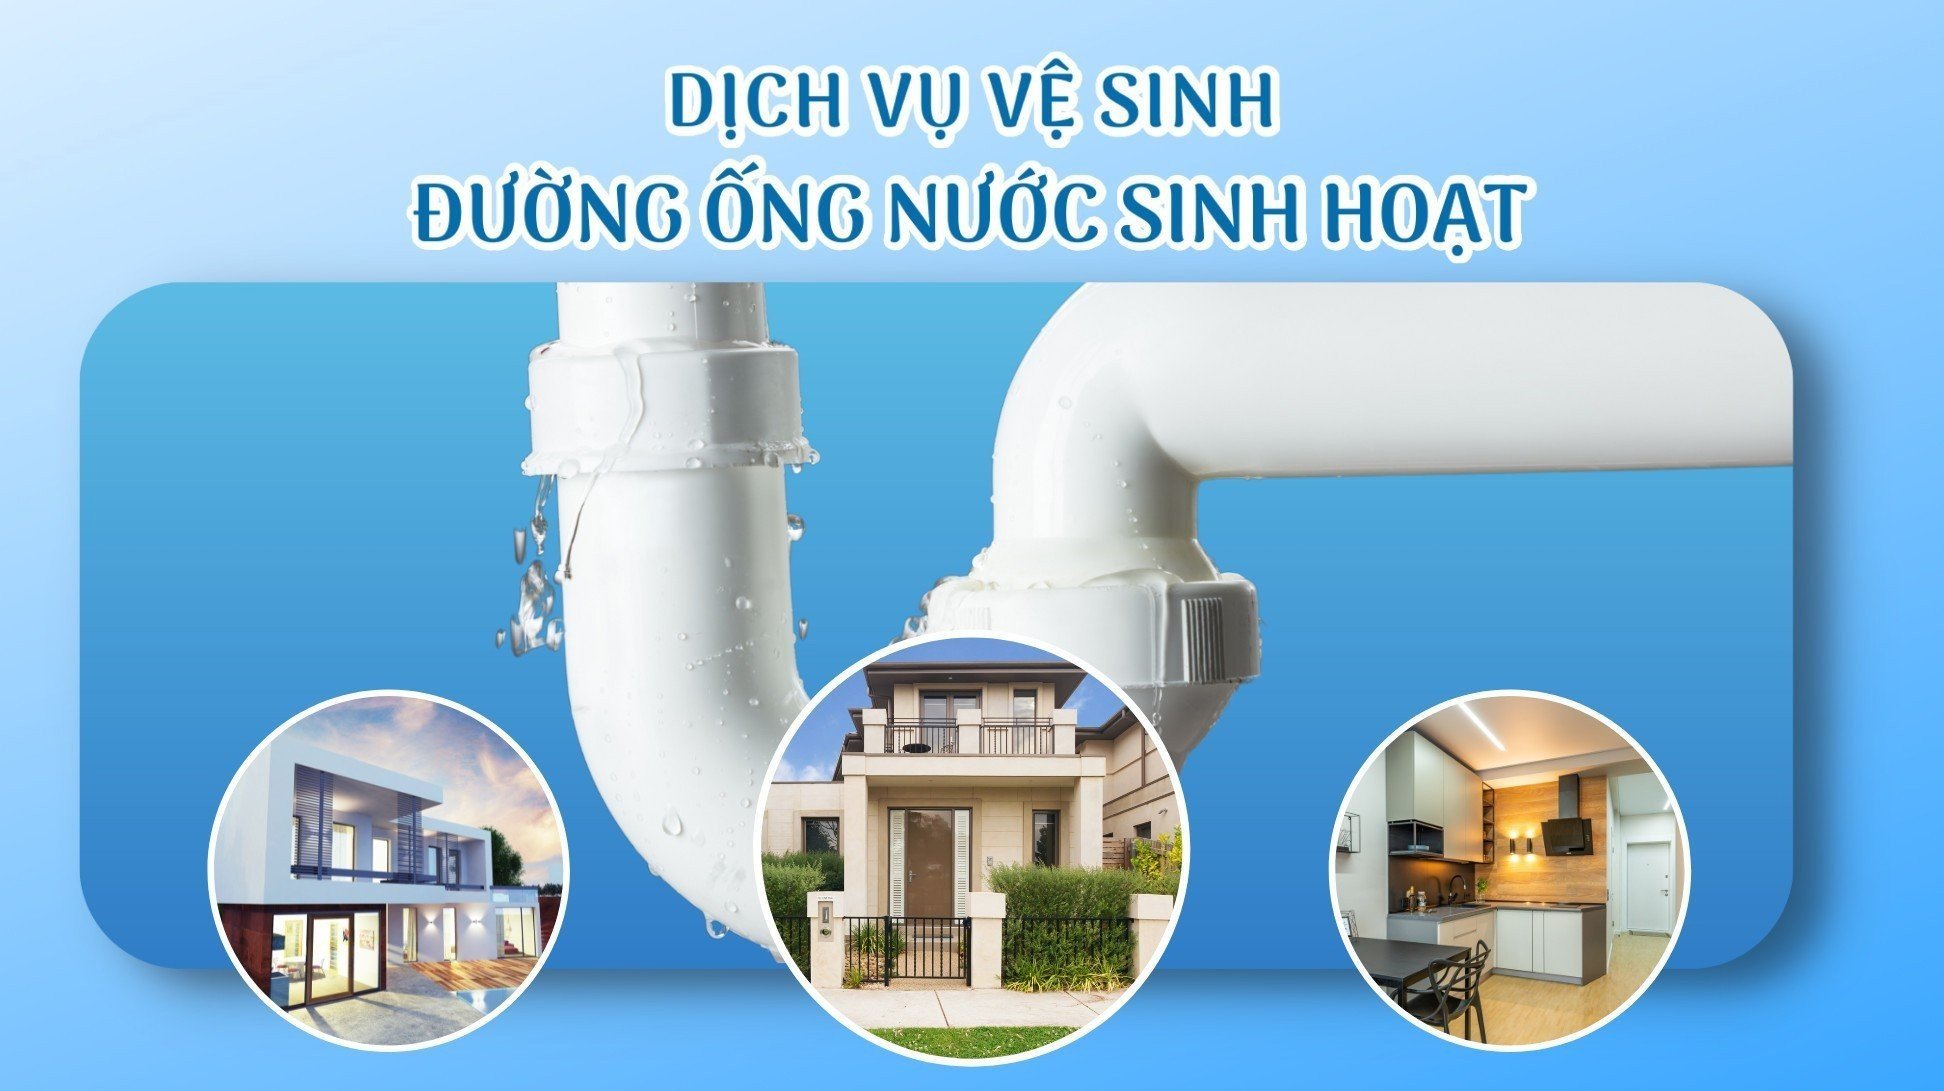 Dịch vụ vệ sinh sục rửa đường ống nước sạch Housecare cam kết thực hiện đúng tiêu chuẩn ISO 9001:2015